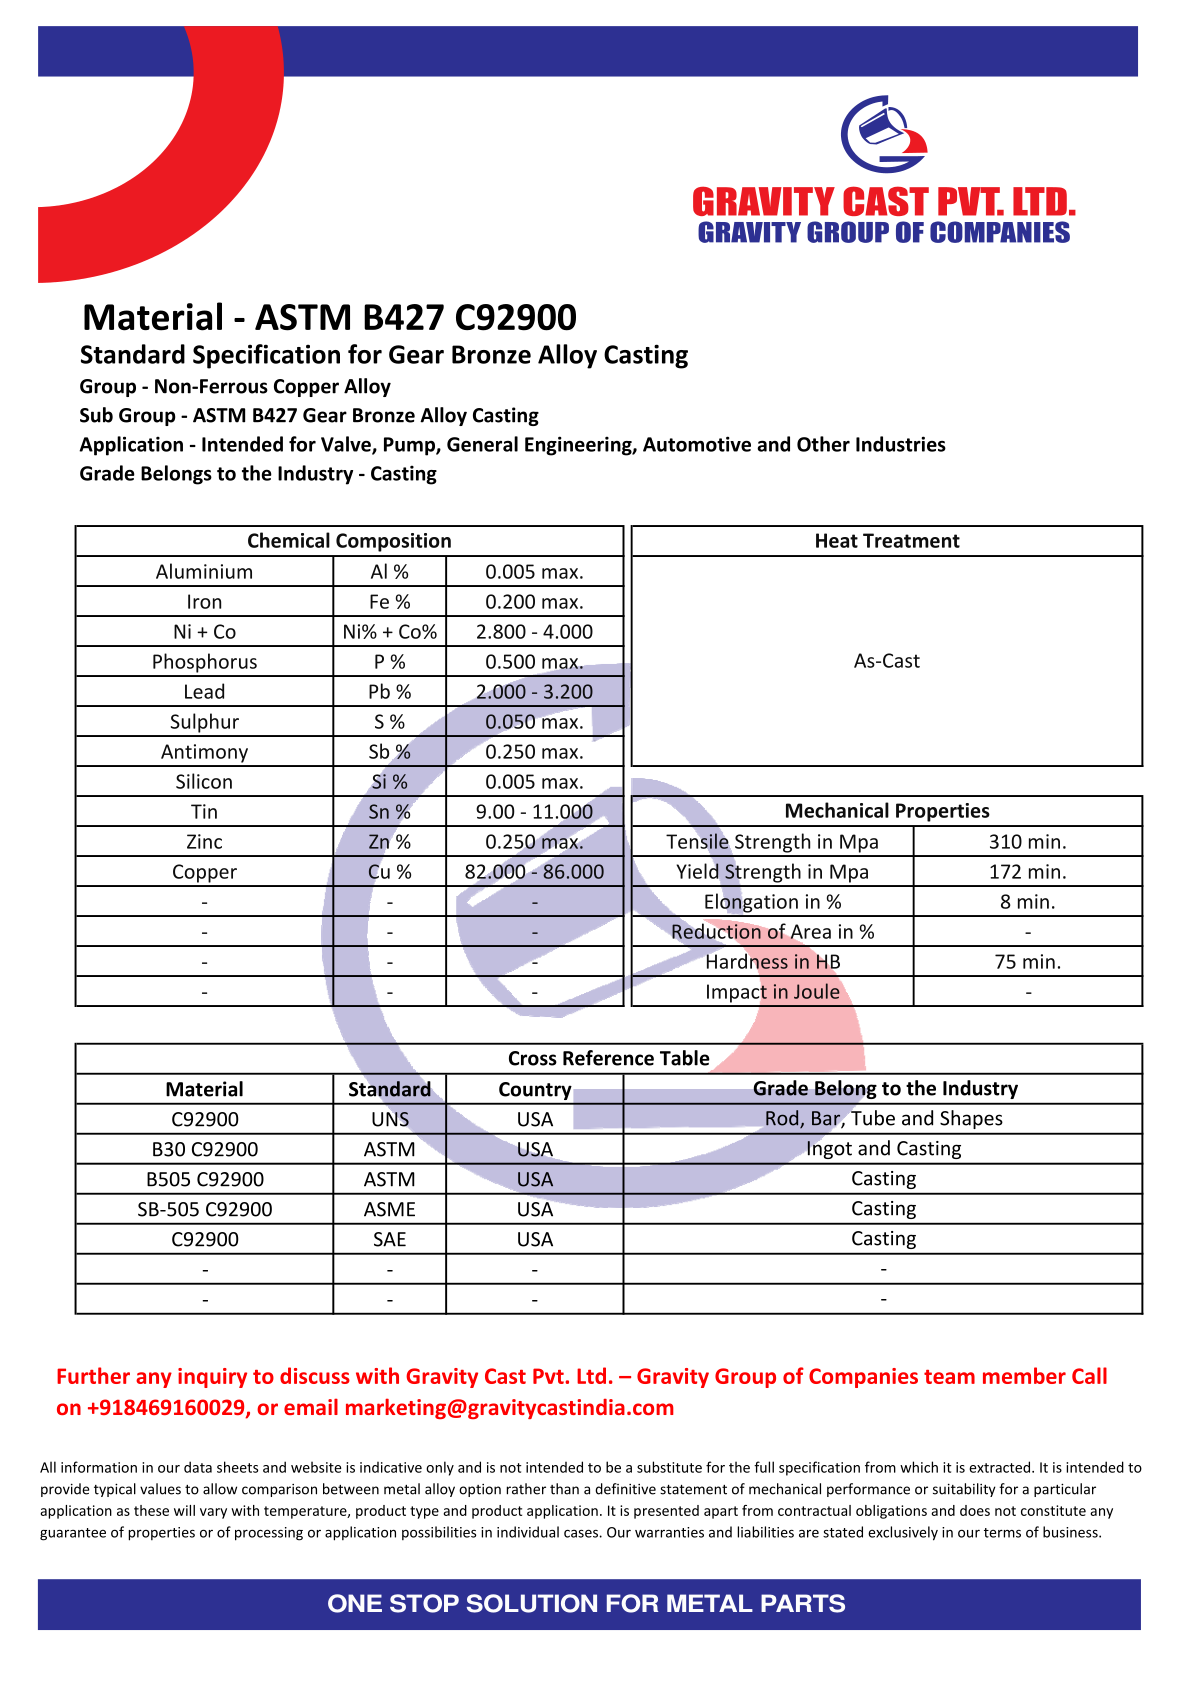 ASTM B427 C92900.pdf